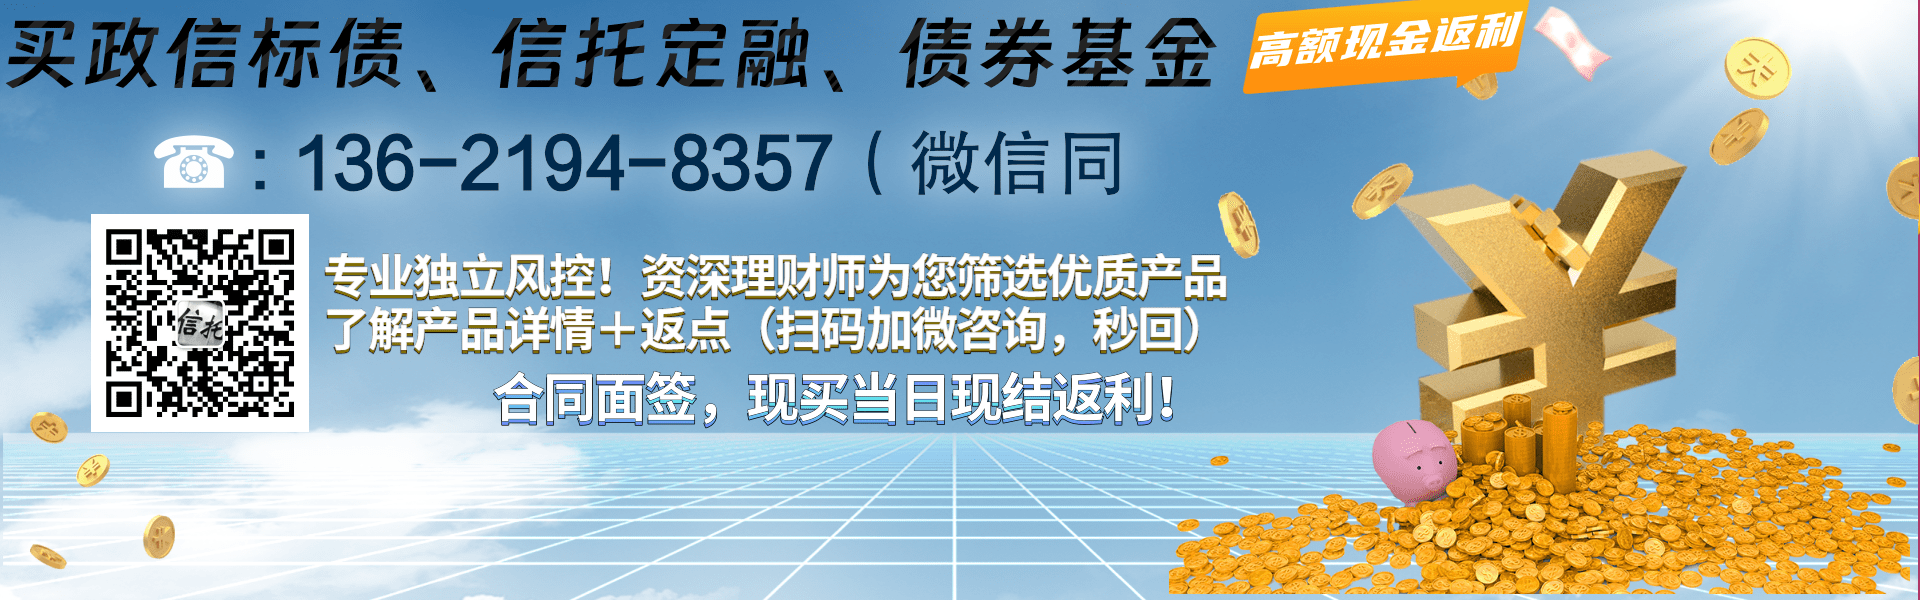 山东泰丰控股集团债权资产项目